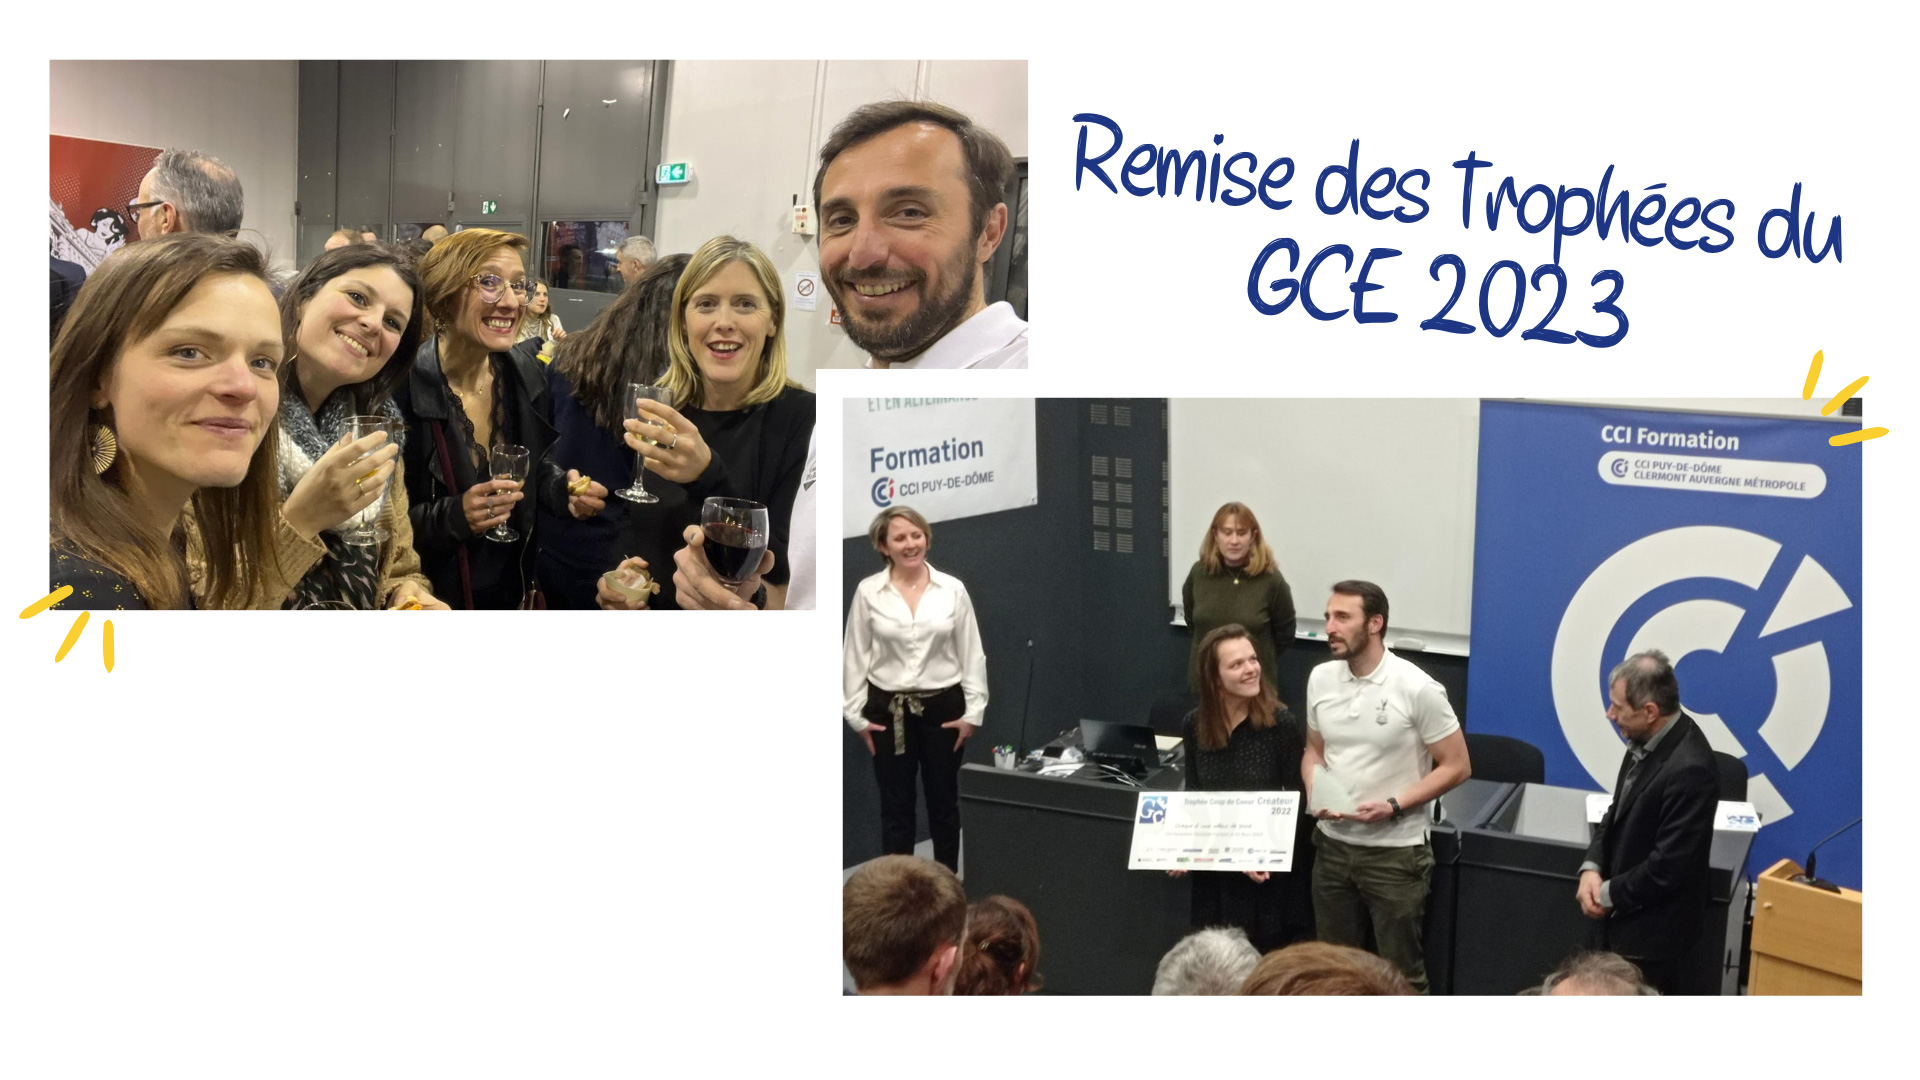 You are currently viewing La remise des trophées du GCE 2023 !